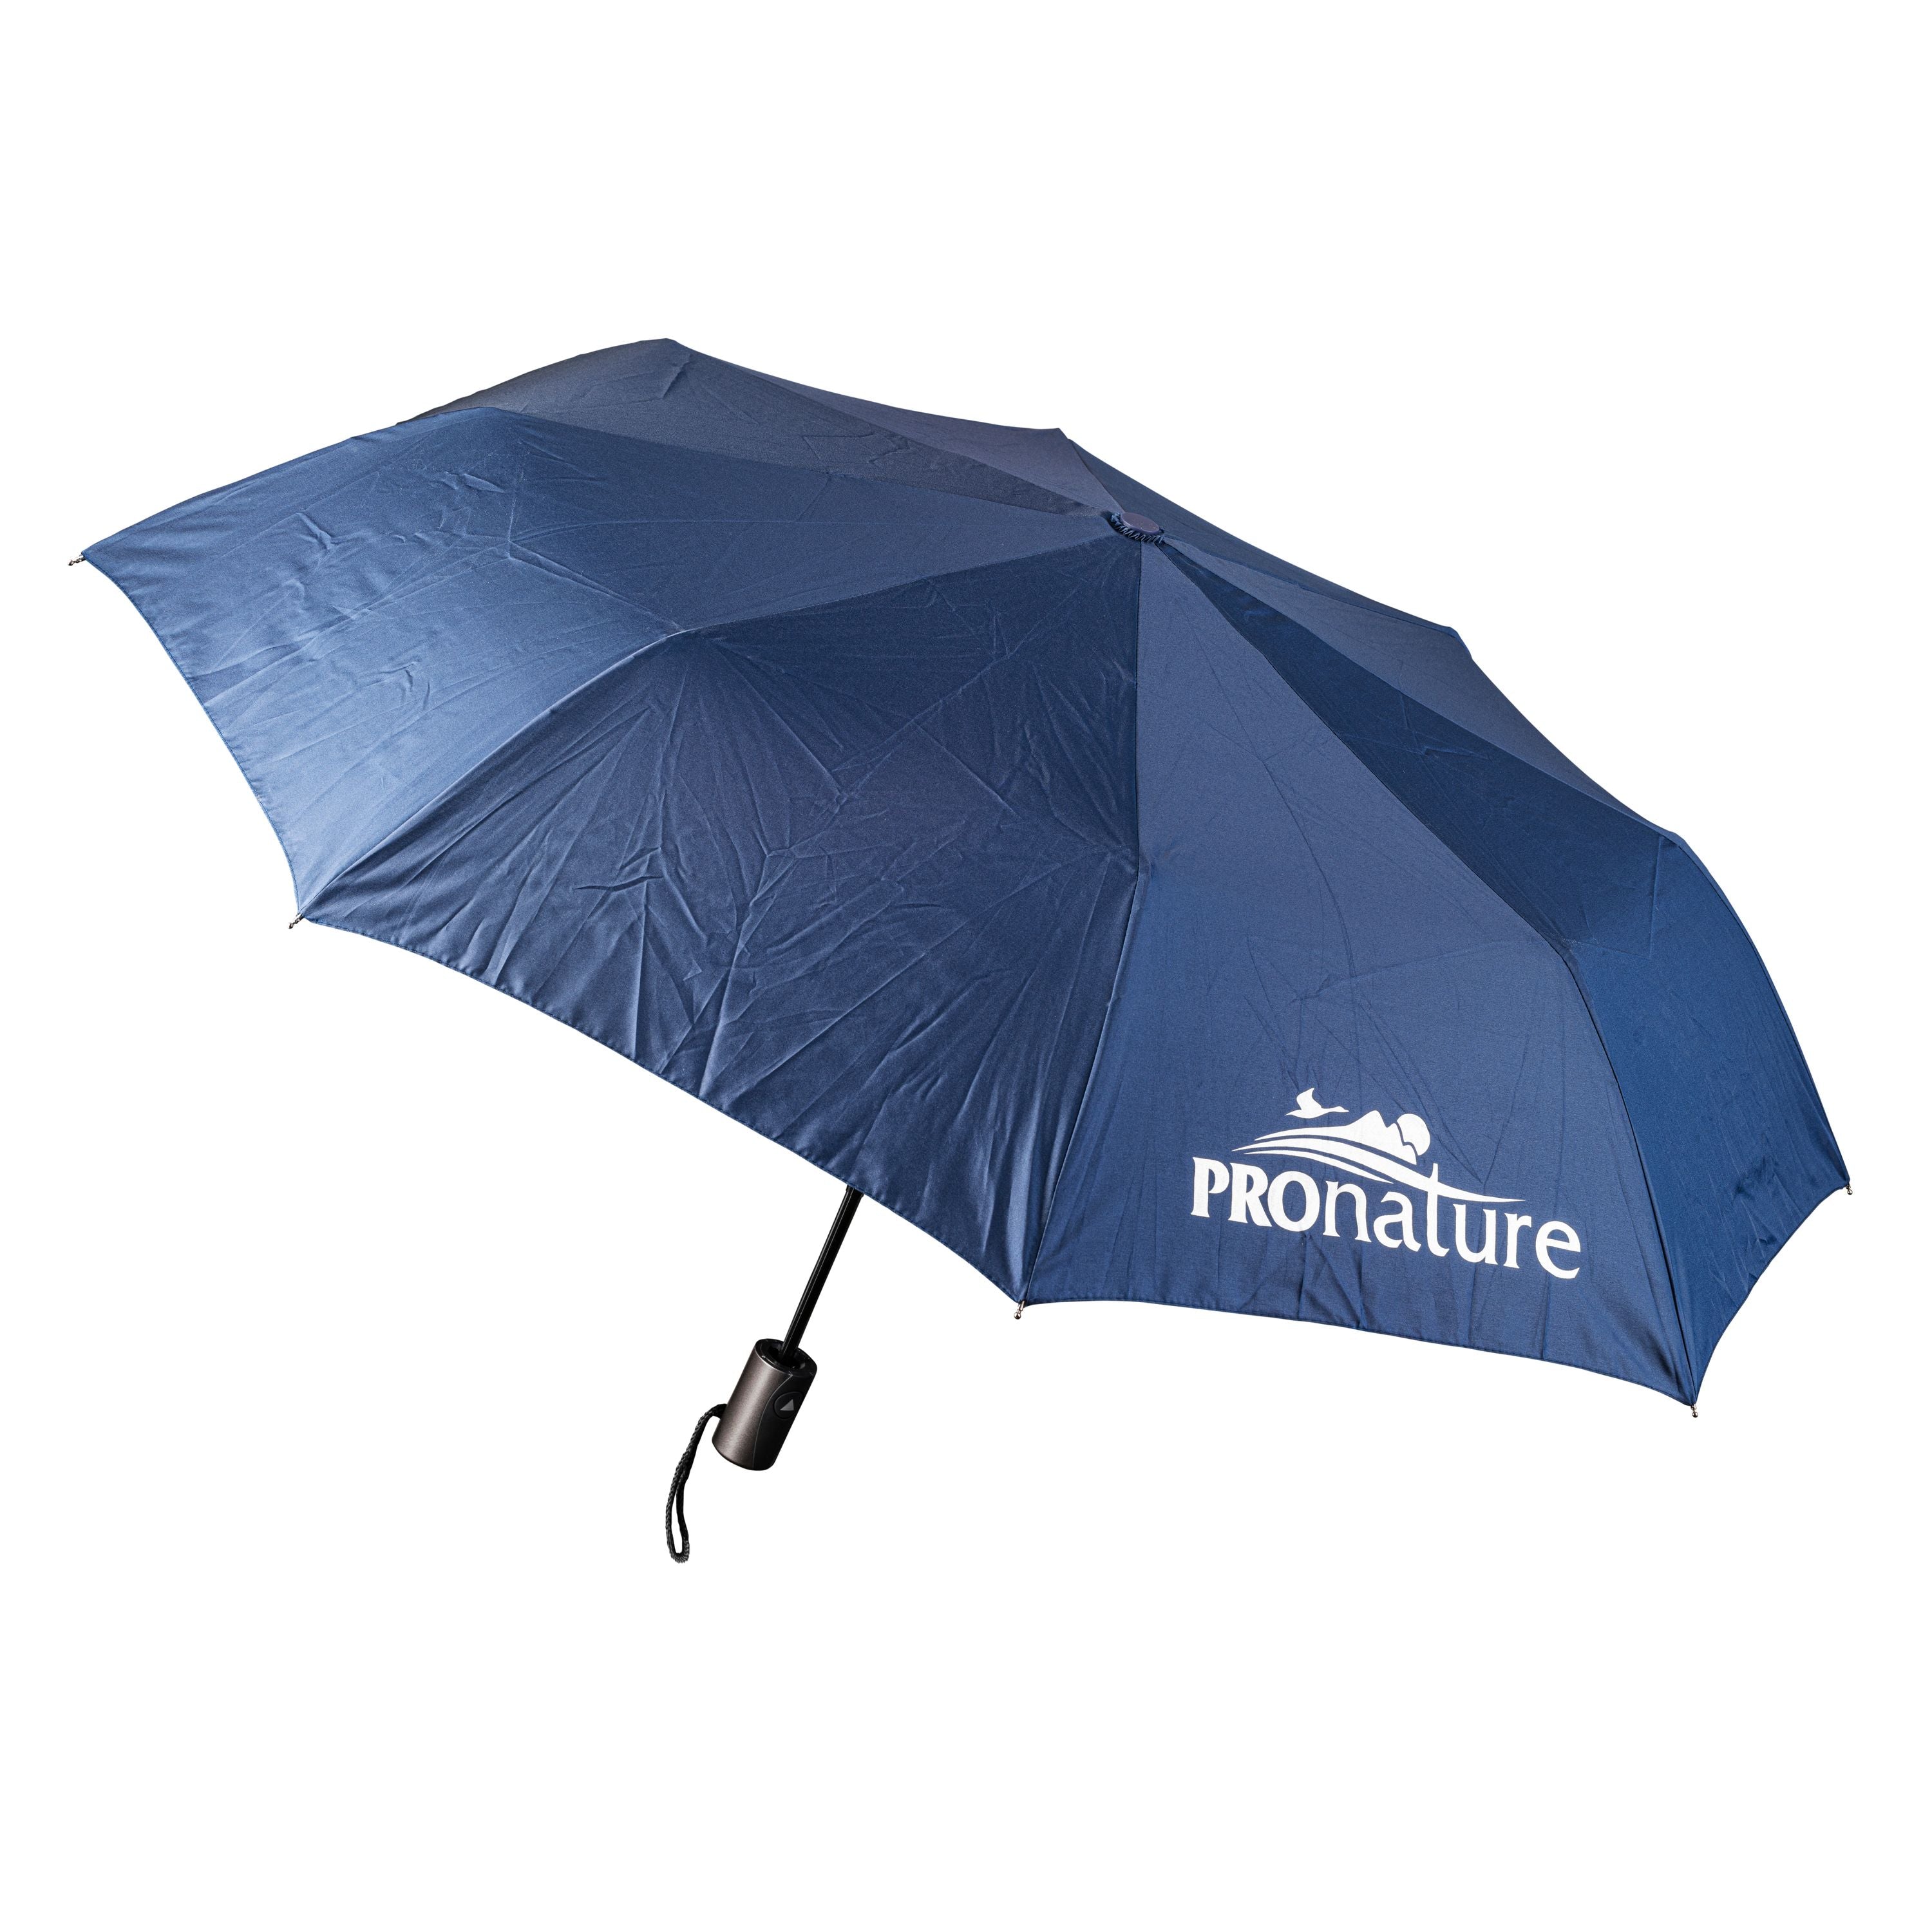 Parapluie rétractable||Compact umbrellla